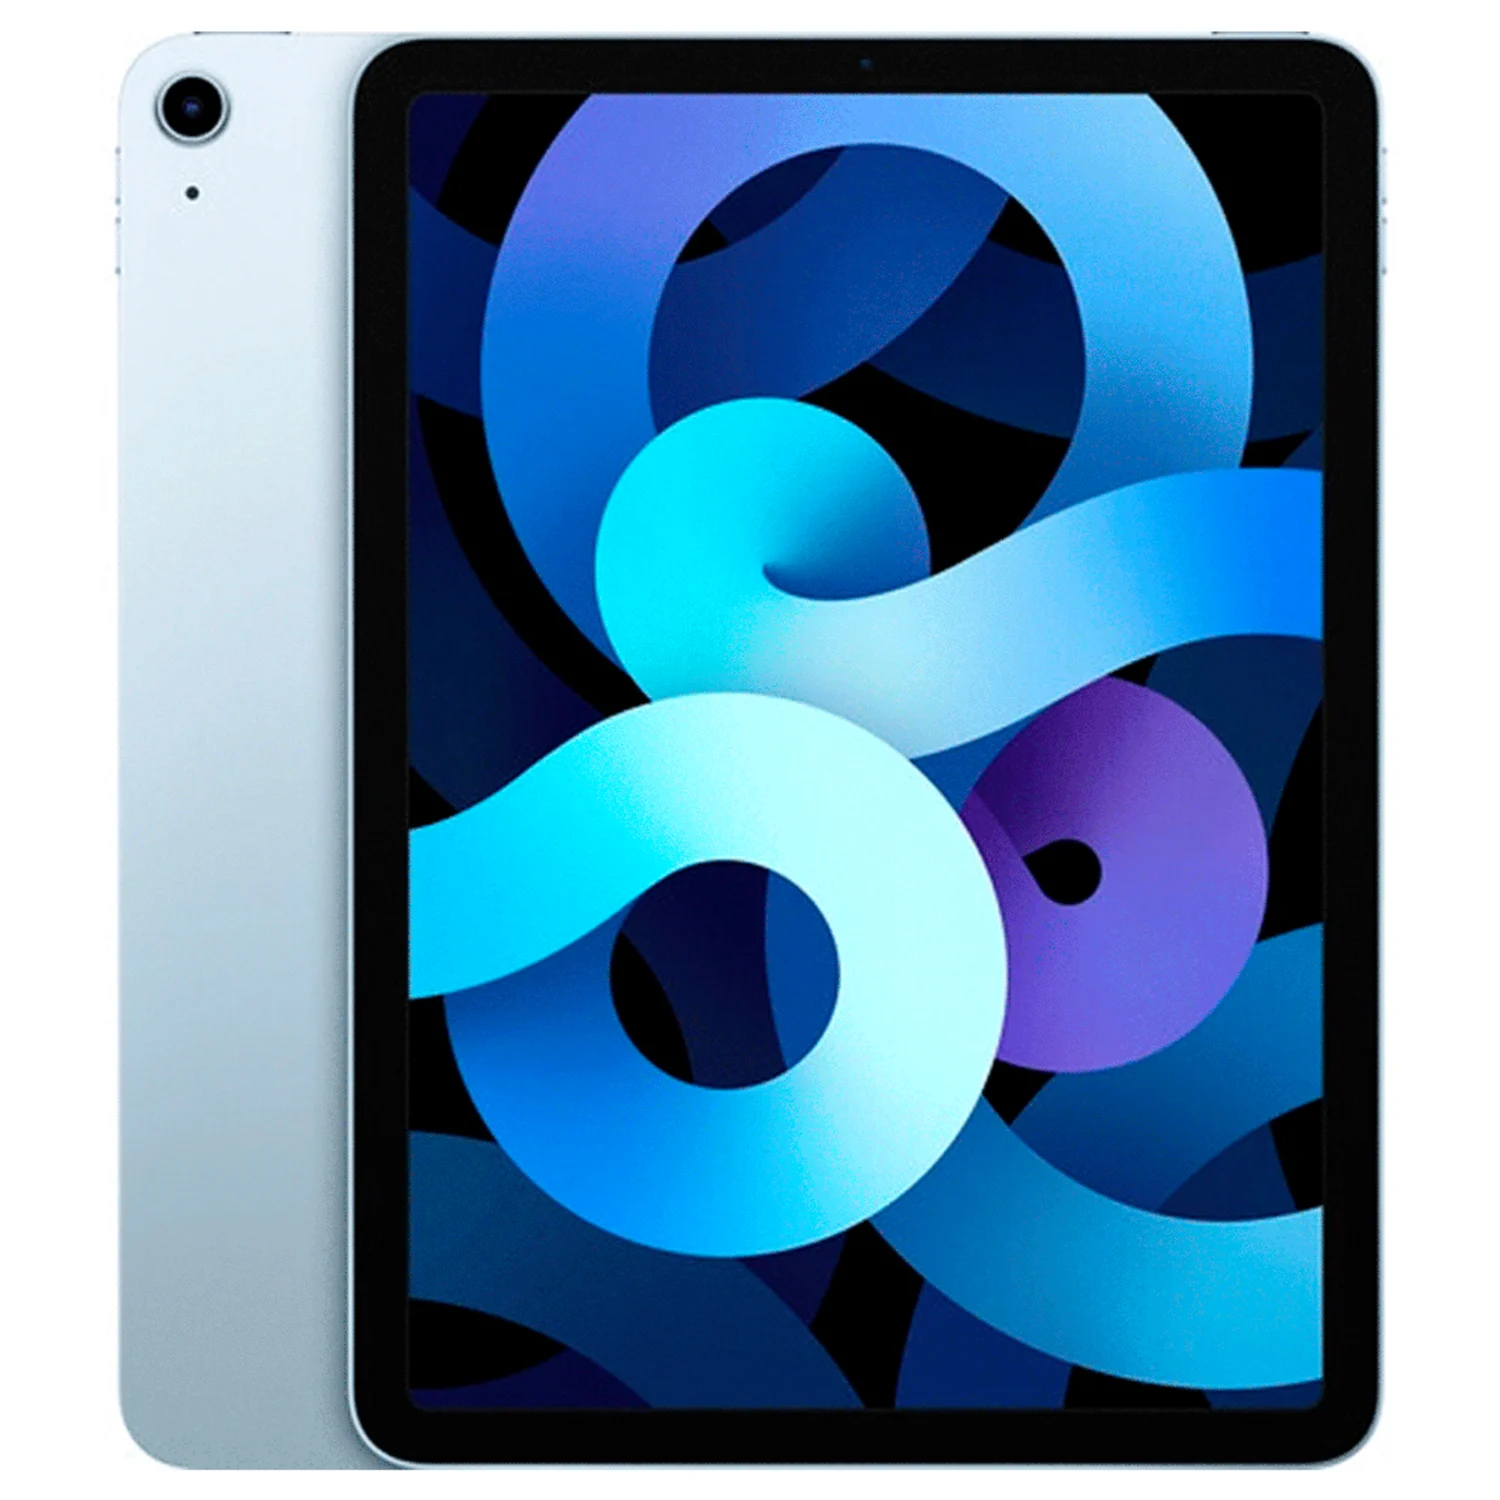 Apple iPad Air 4 2020 MYFY2LL/A Wifi 10.9" Chip A14 Bionic 256GB - Azul